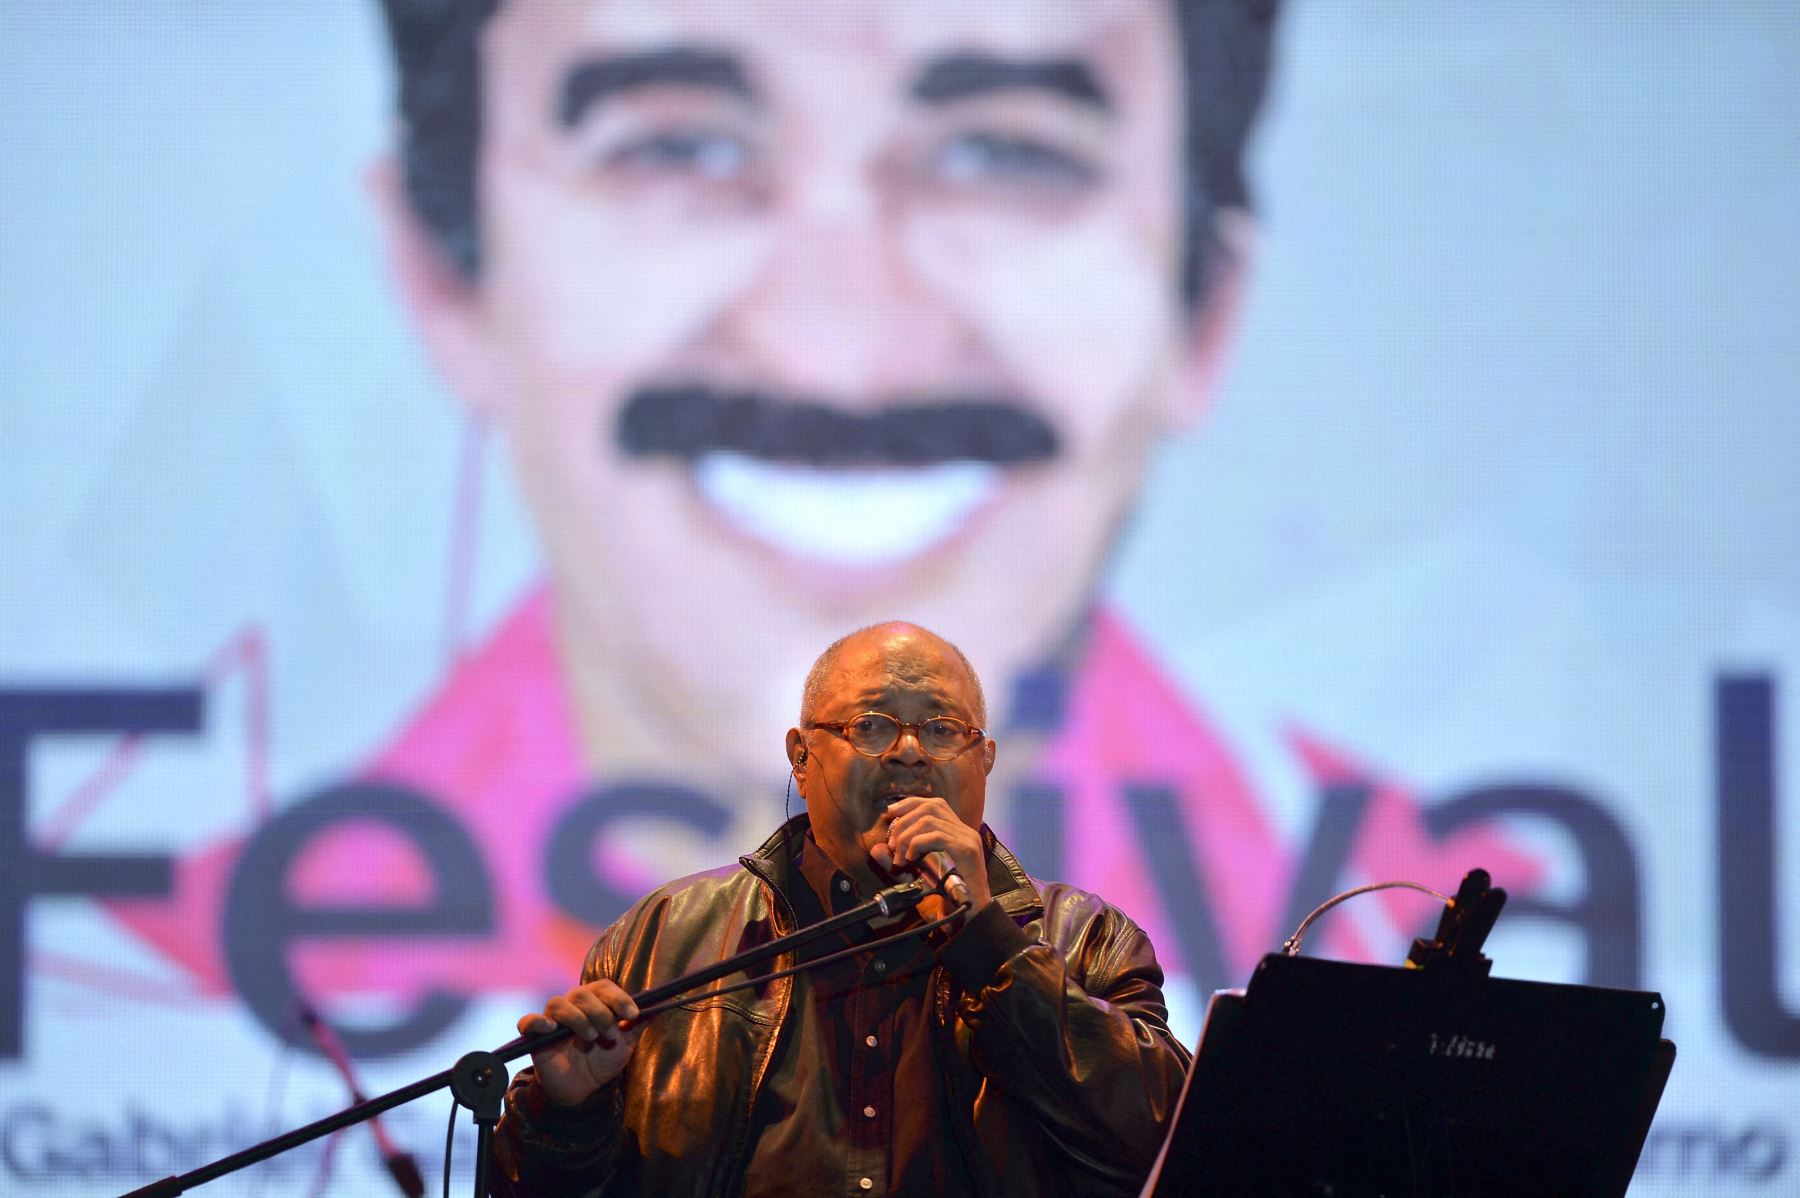 El músico cubano Pablo Milanés canta durante la ceremonia de clausura de la III edición del Premio de Periodismo Gabriel García Márquez que reconoce lo mejor del periodismo iberoamericano, en Medellín, departamento de Antioquia, Colombia, el 1 de octubre de 2015. Foto:AFP